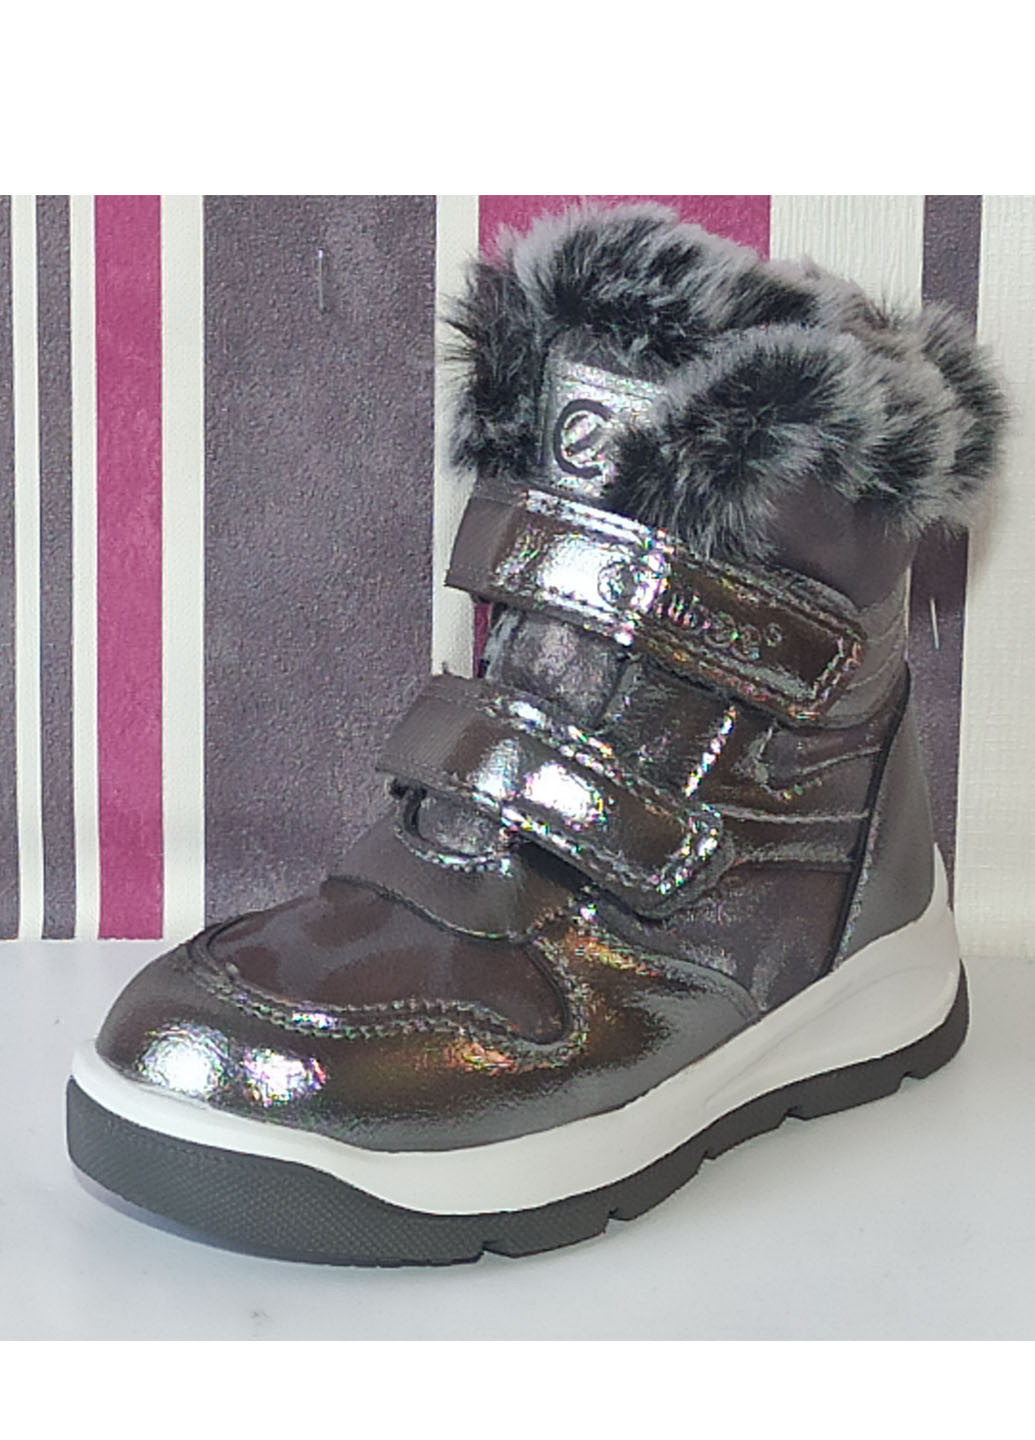 Серебряные повседневные зимние зимние ботинки для девочки на овчине н219 23-15,4см 24-15,9см Clibee